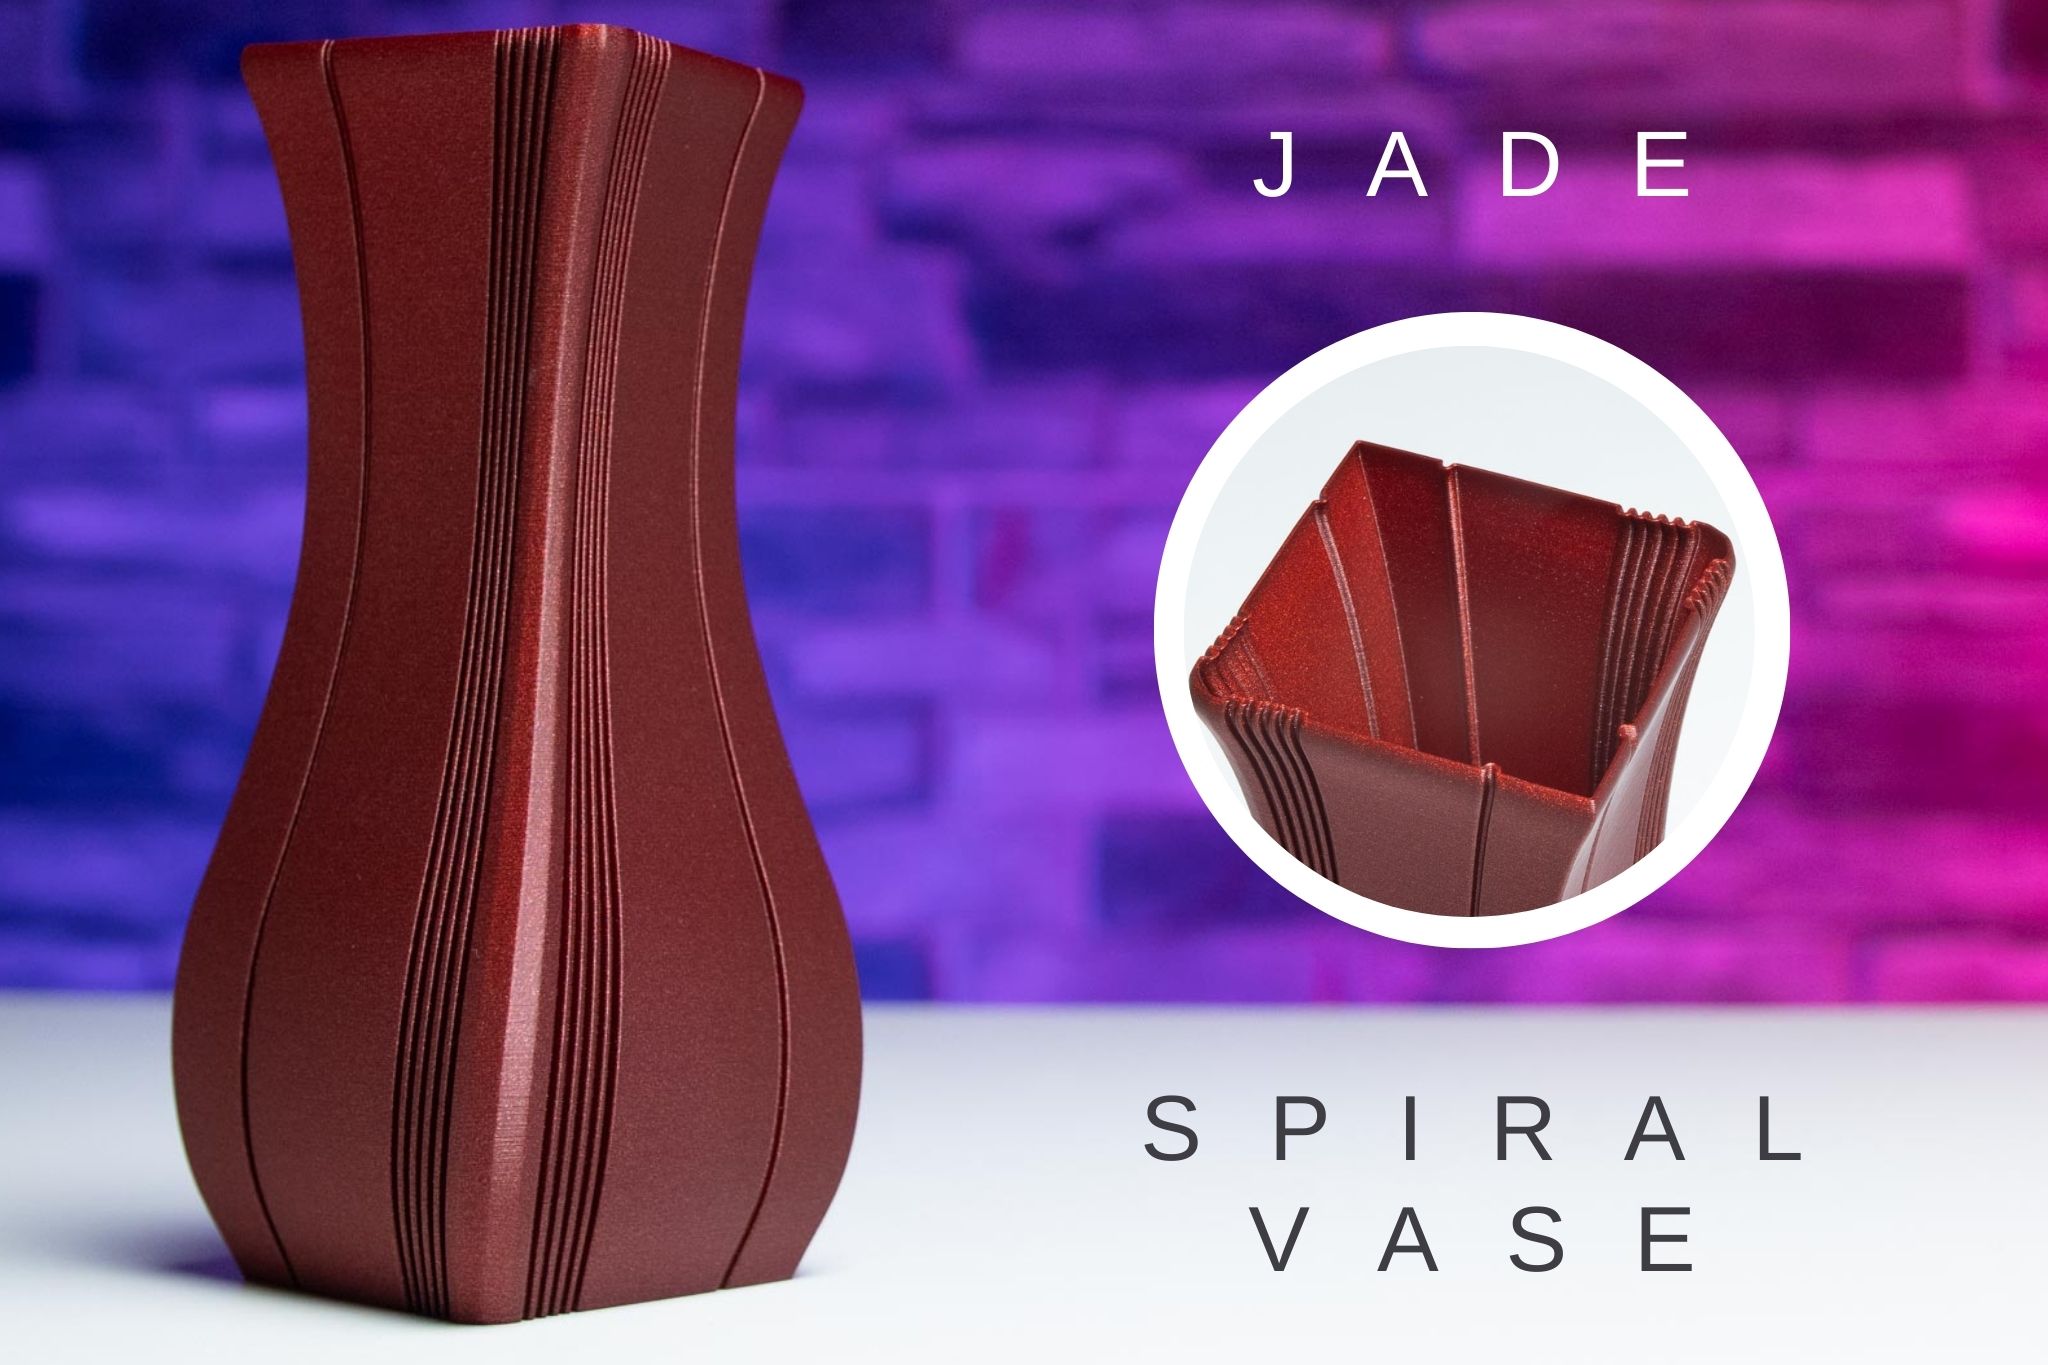 3D Printed Spiral Vase JADE